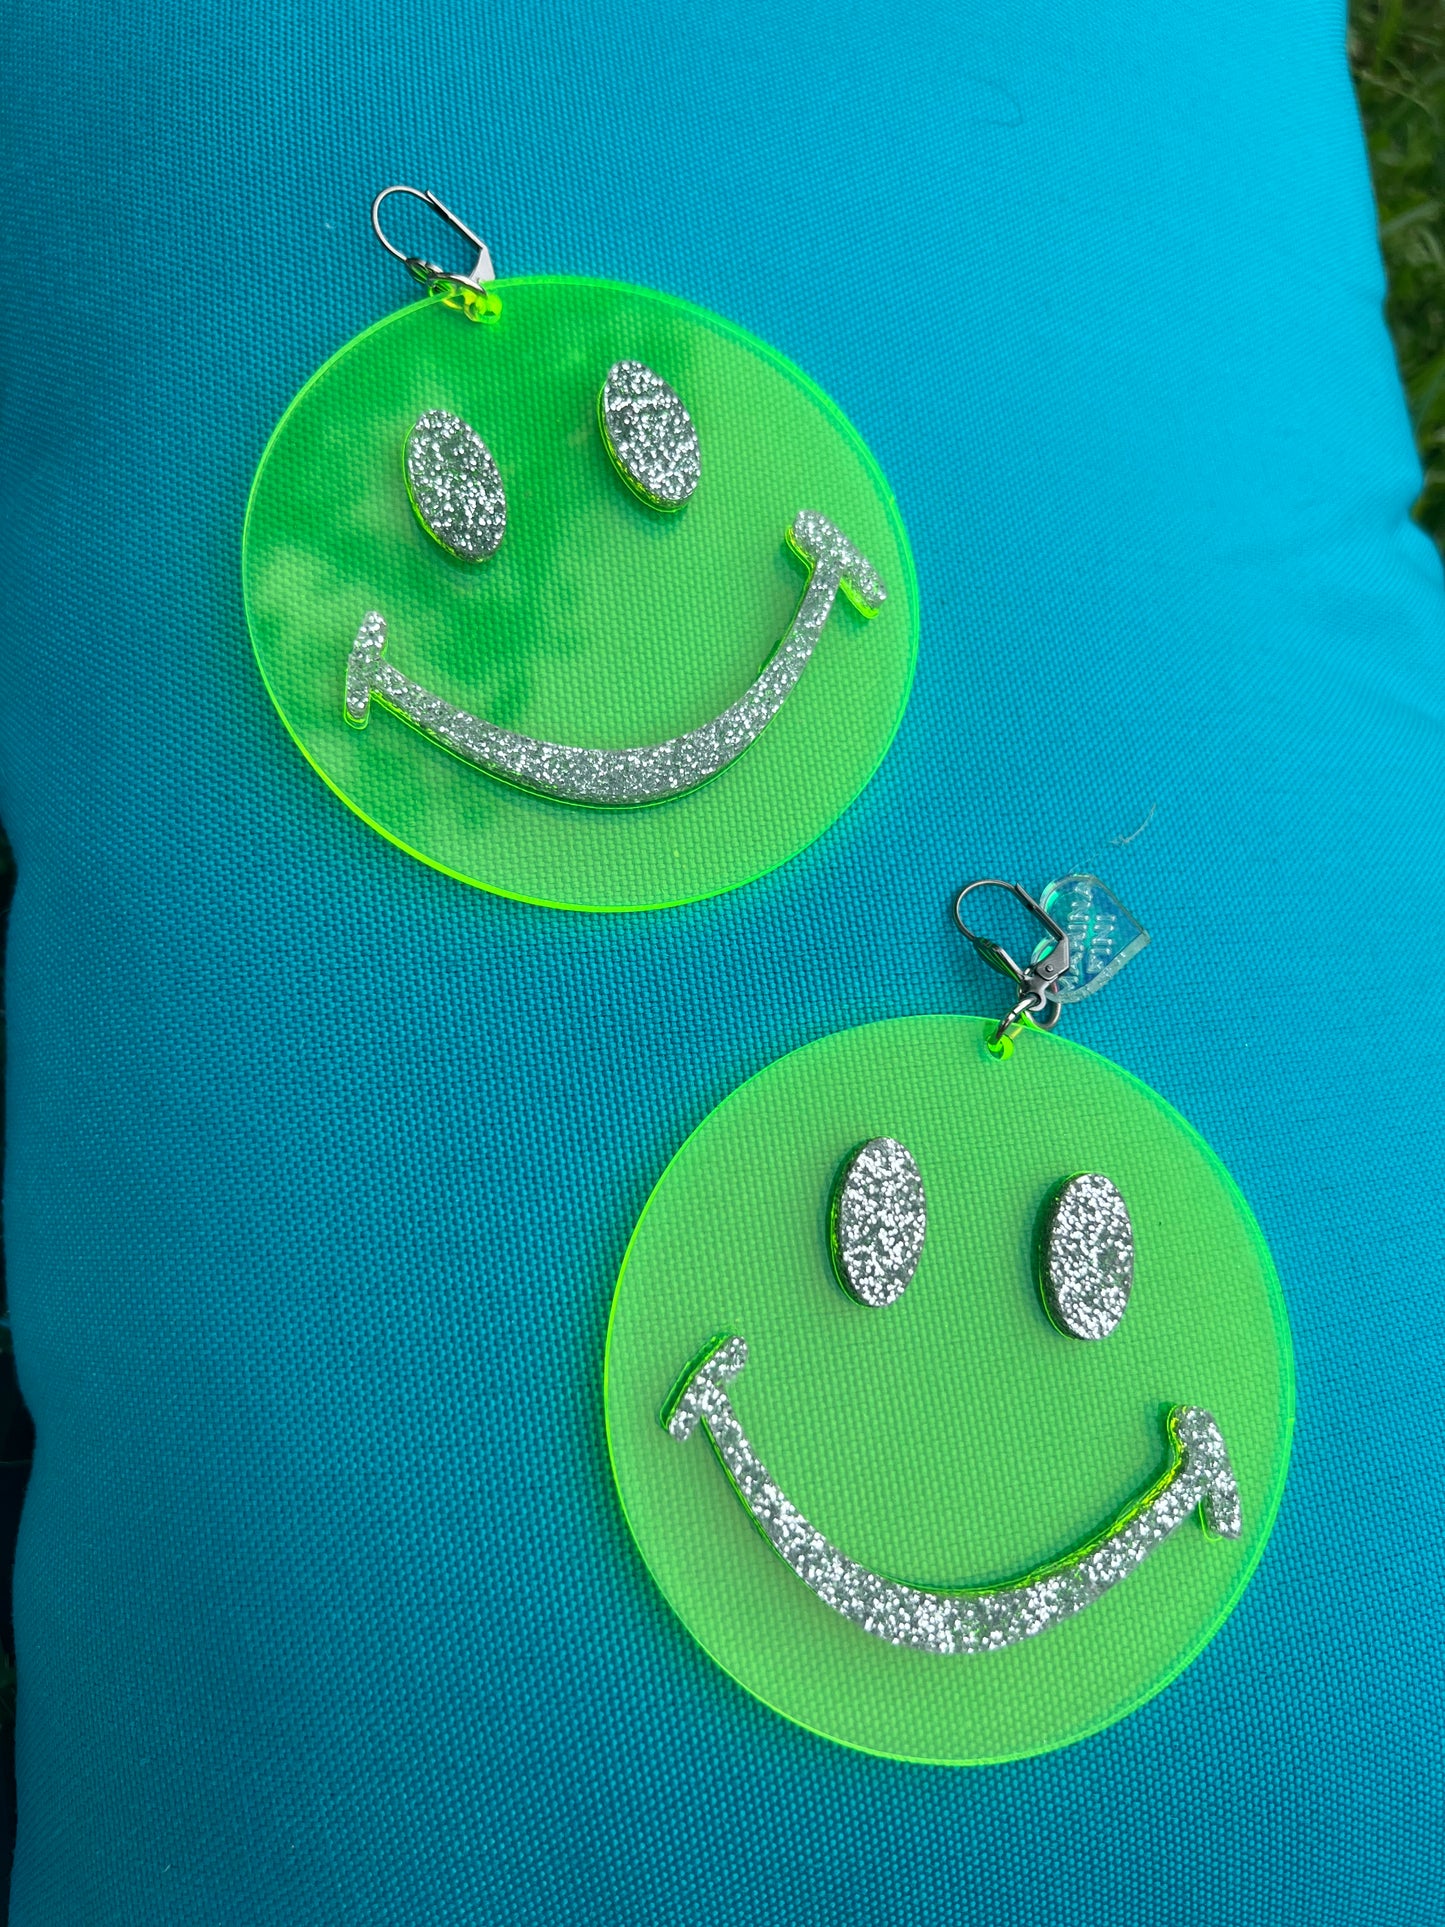 Neon Green Smiley Face Earrings